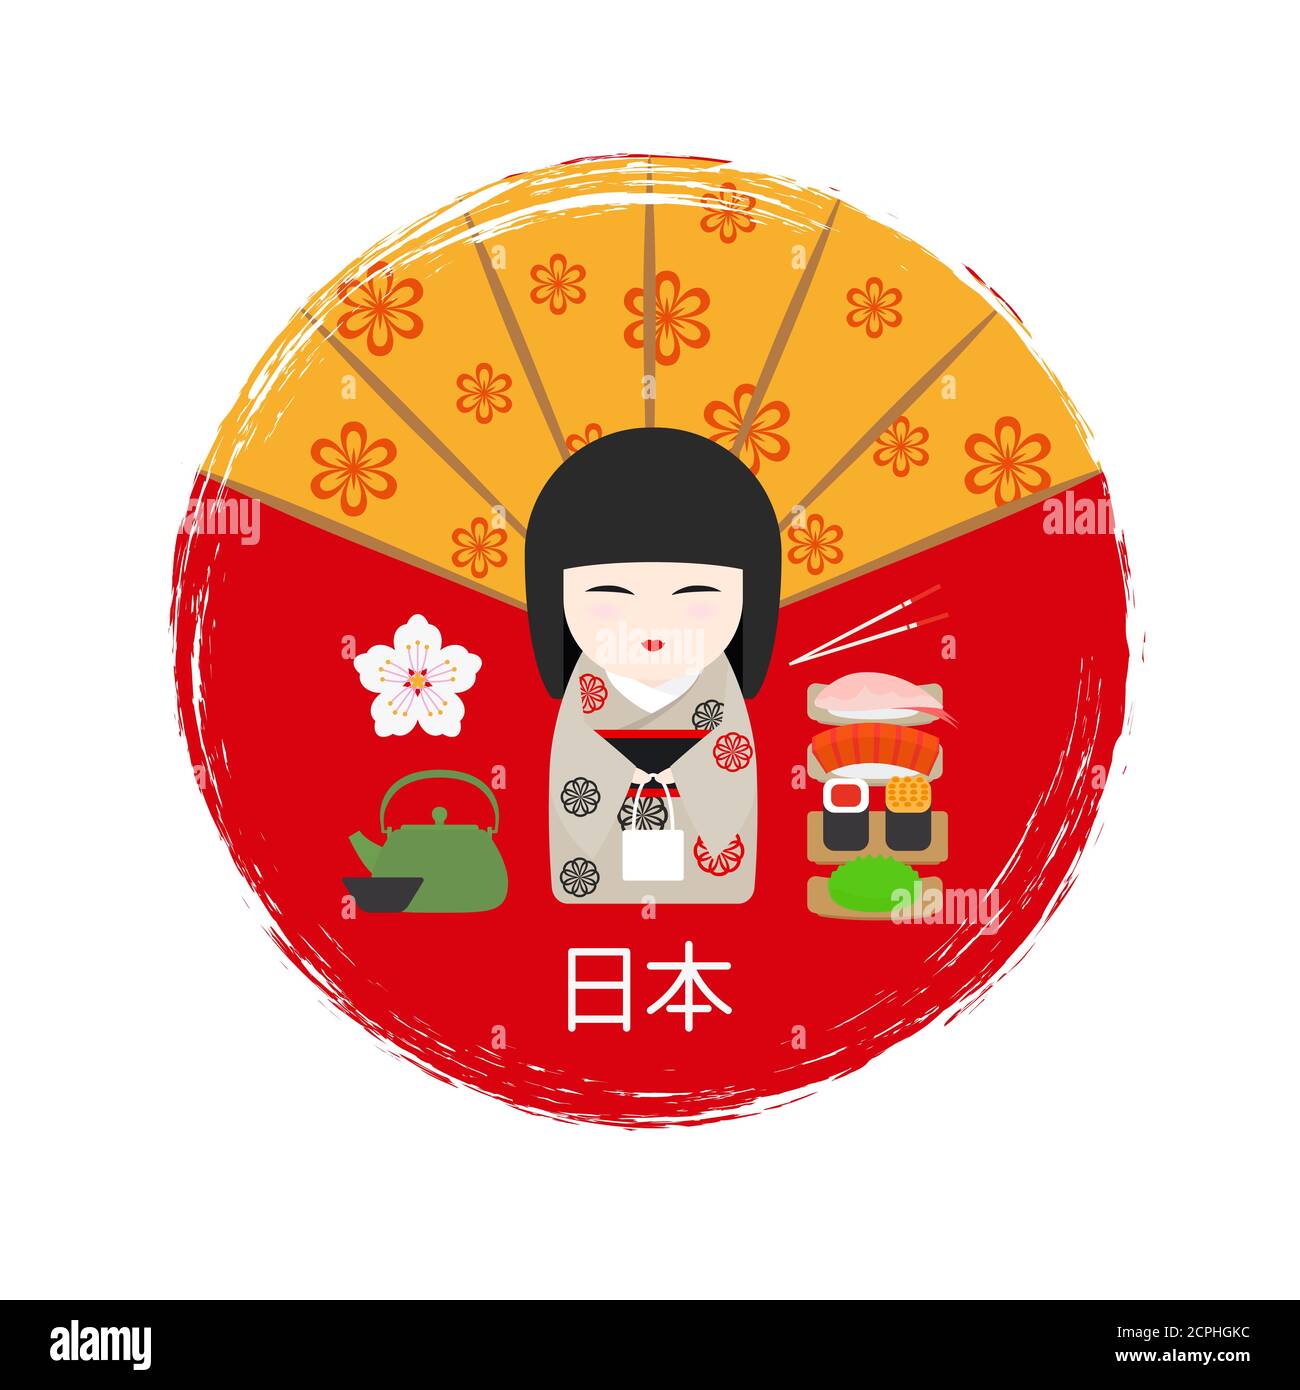 Bannière asiatique avec poupée Kokeshi japonaise, fan et vecteur sushi. Illustration des sushis japonais et du ventilateur rouge. Texte - Japon Illustration de Vecteur